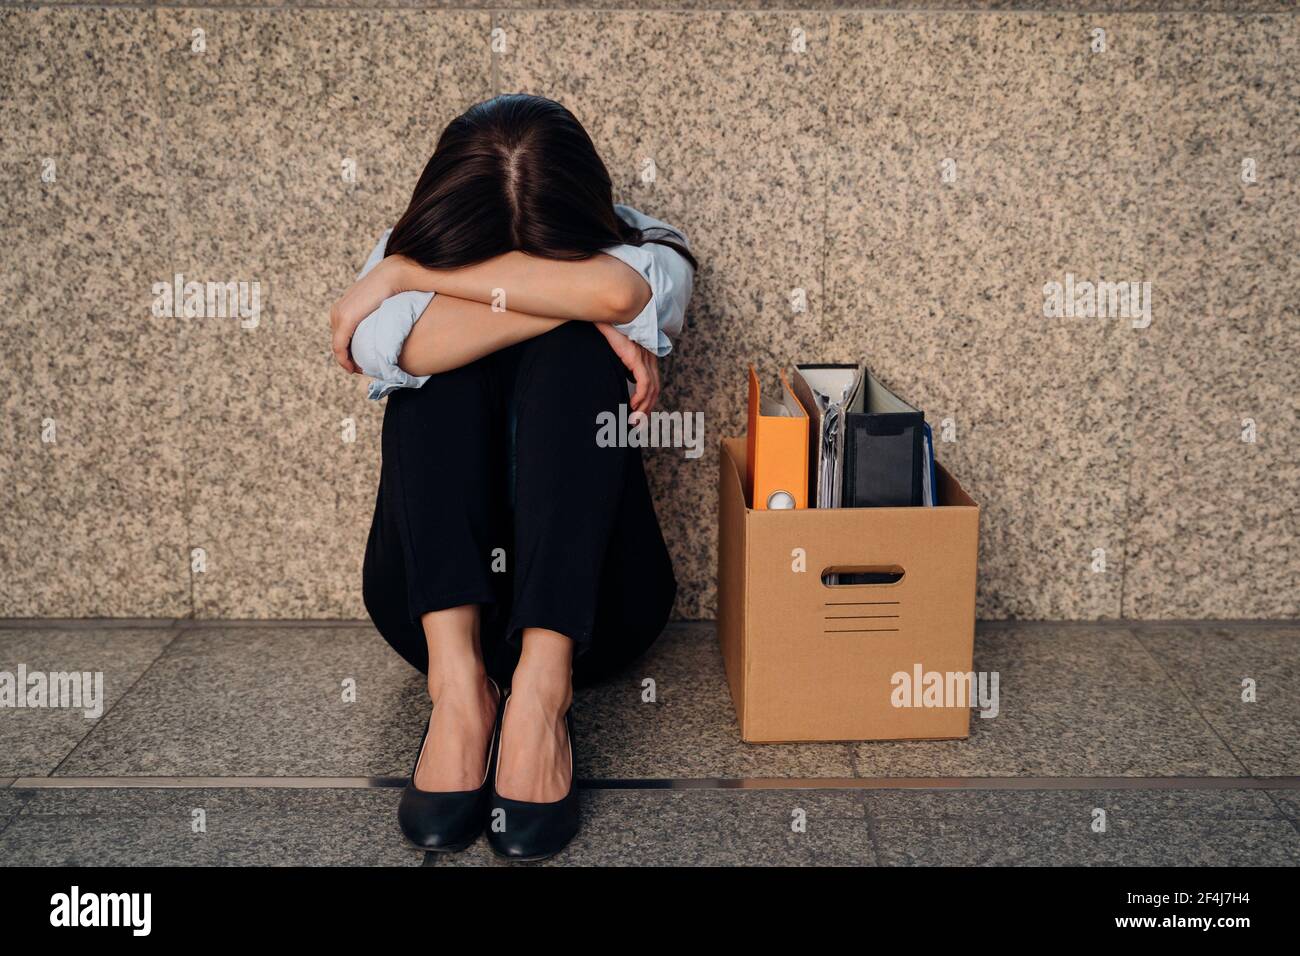 Unbekannte junge Frau, die ihr Gesicht versteckt, nachdem sie entlassen wurde Von der Arbeit wegen der wirtschaftlichen Rezession sitzen mit Karton Habseligkeiten auf dem Boden und weinen Stockfoto